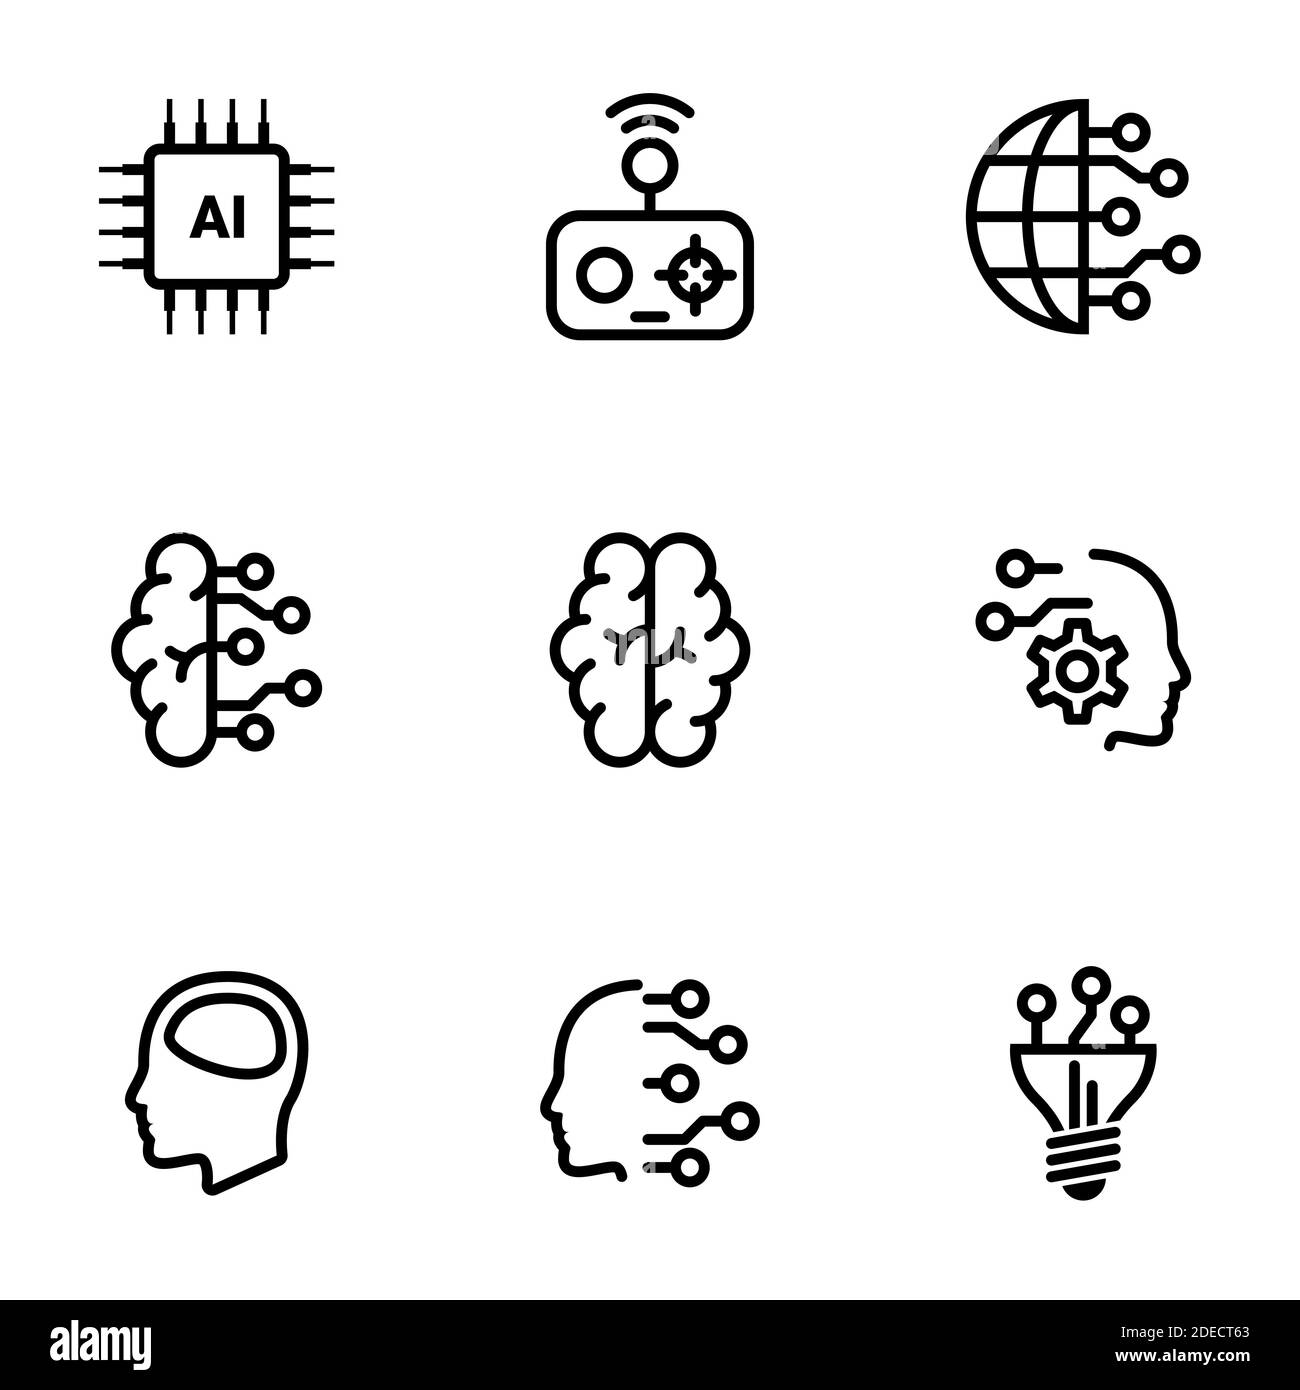 Ensemble d'icônes simples sur un thème intellect artificiel, esprit, technologie, vecteur, ensemble. Arrière-plan blanc Illustration de Vecteur